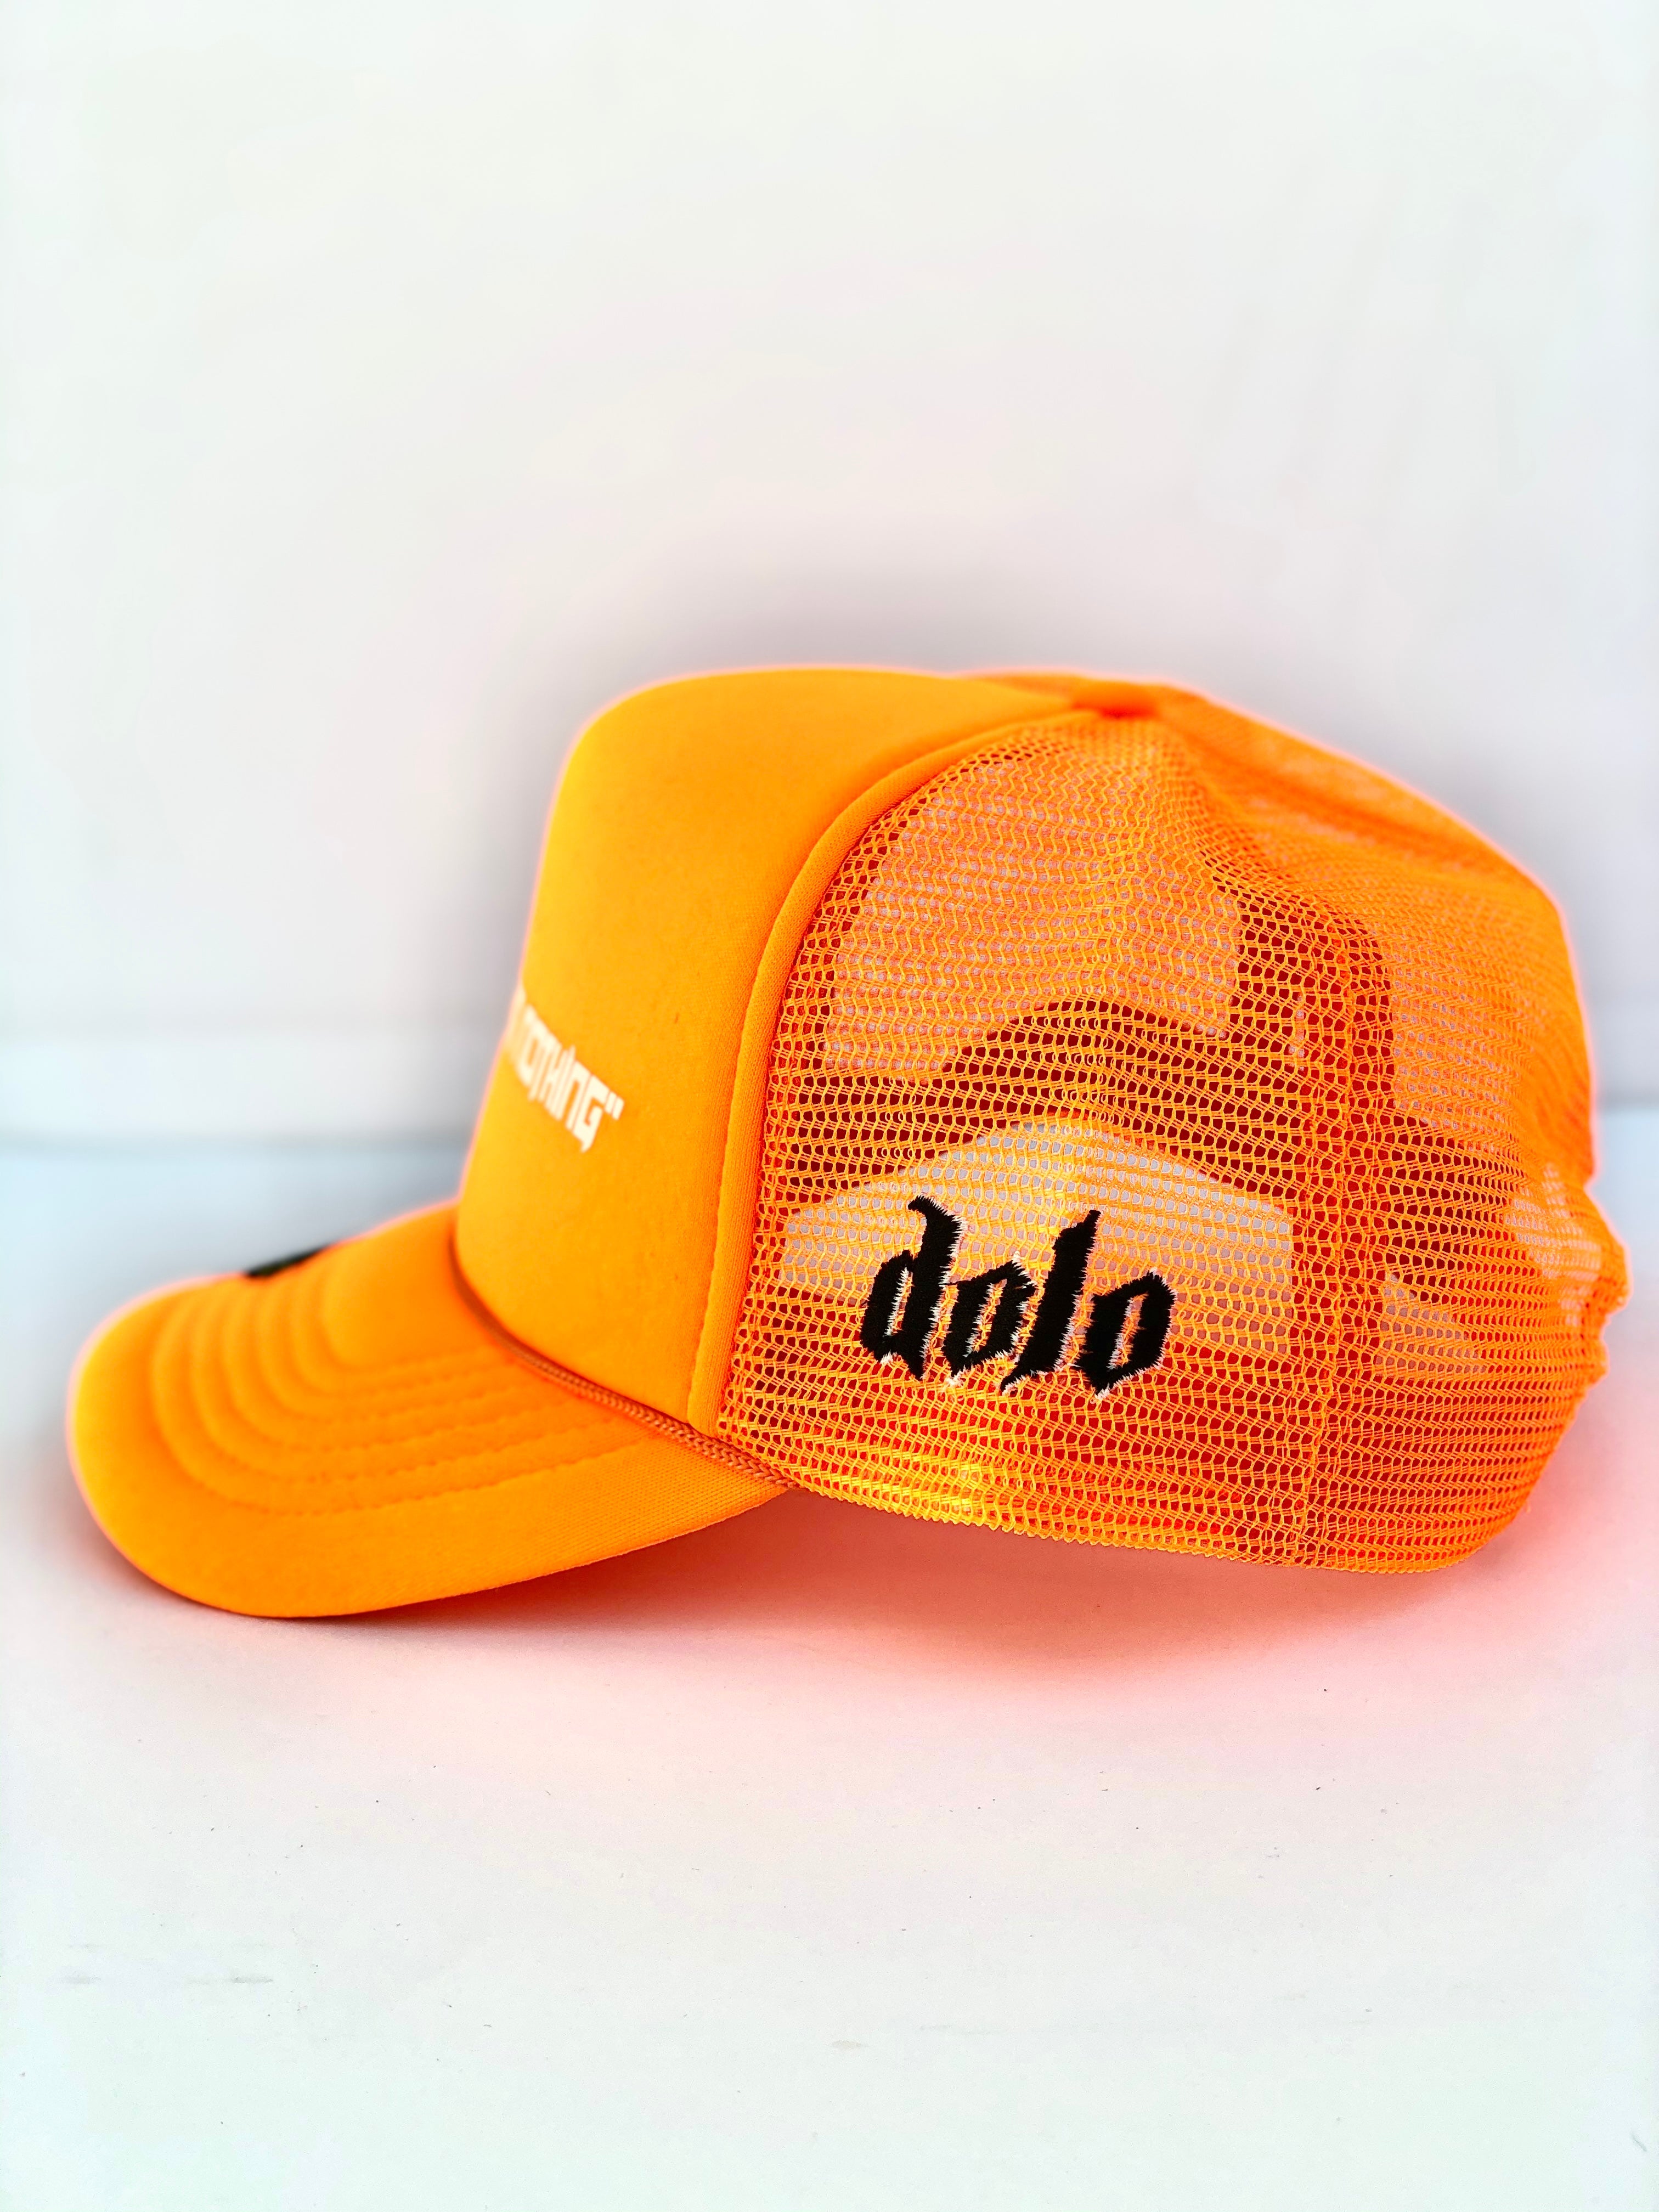 1Dolo Trucker hat